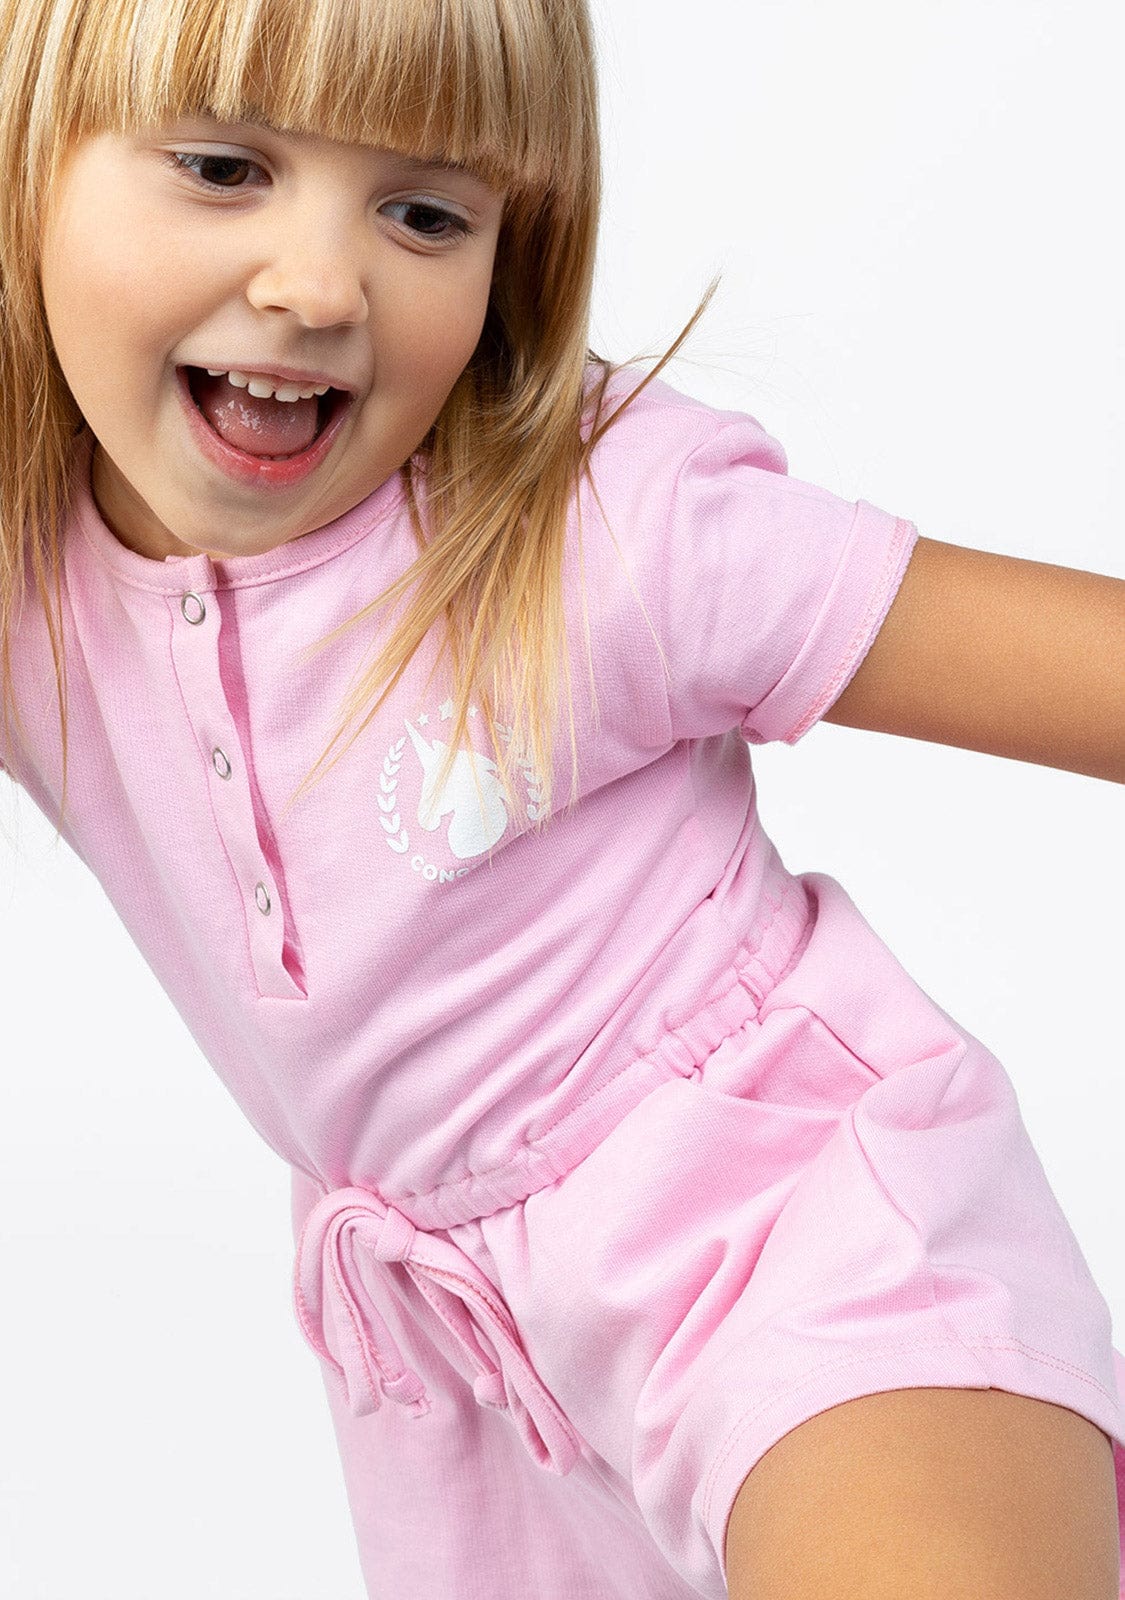 CONGUITOS TEXTIL Clothing Girl's Pink Plush Plain Jumpsuit